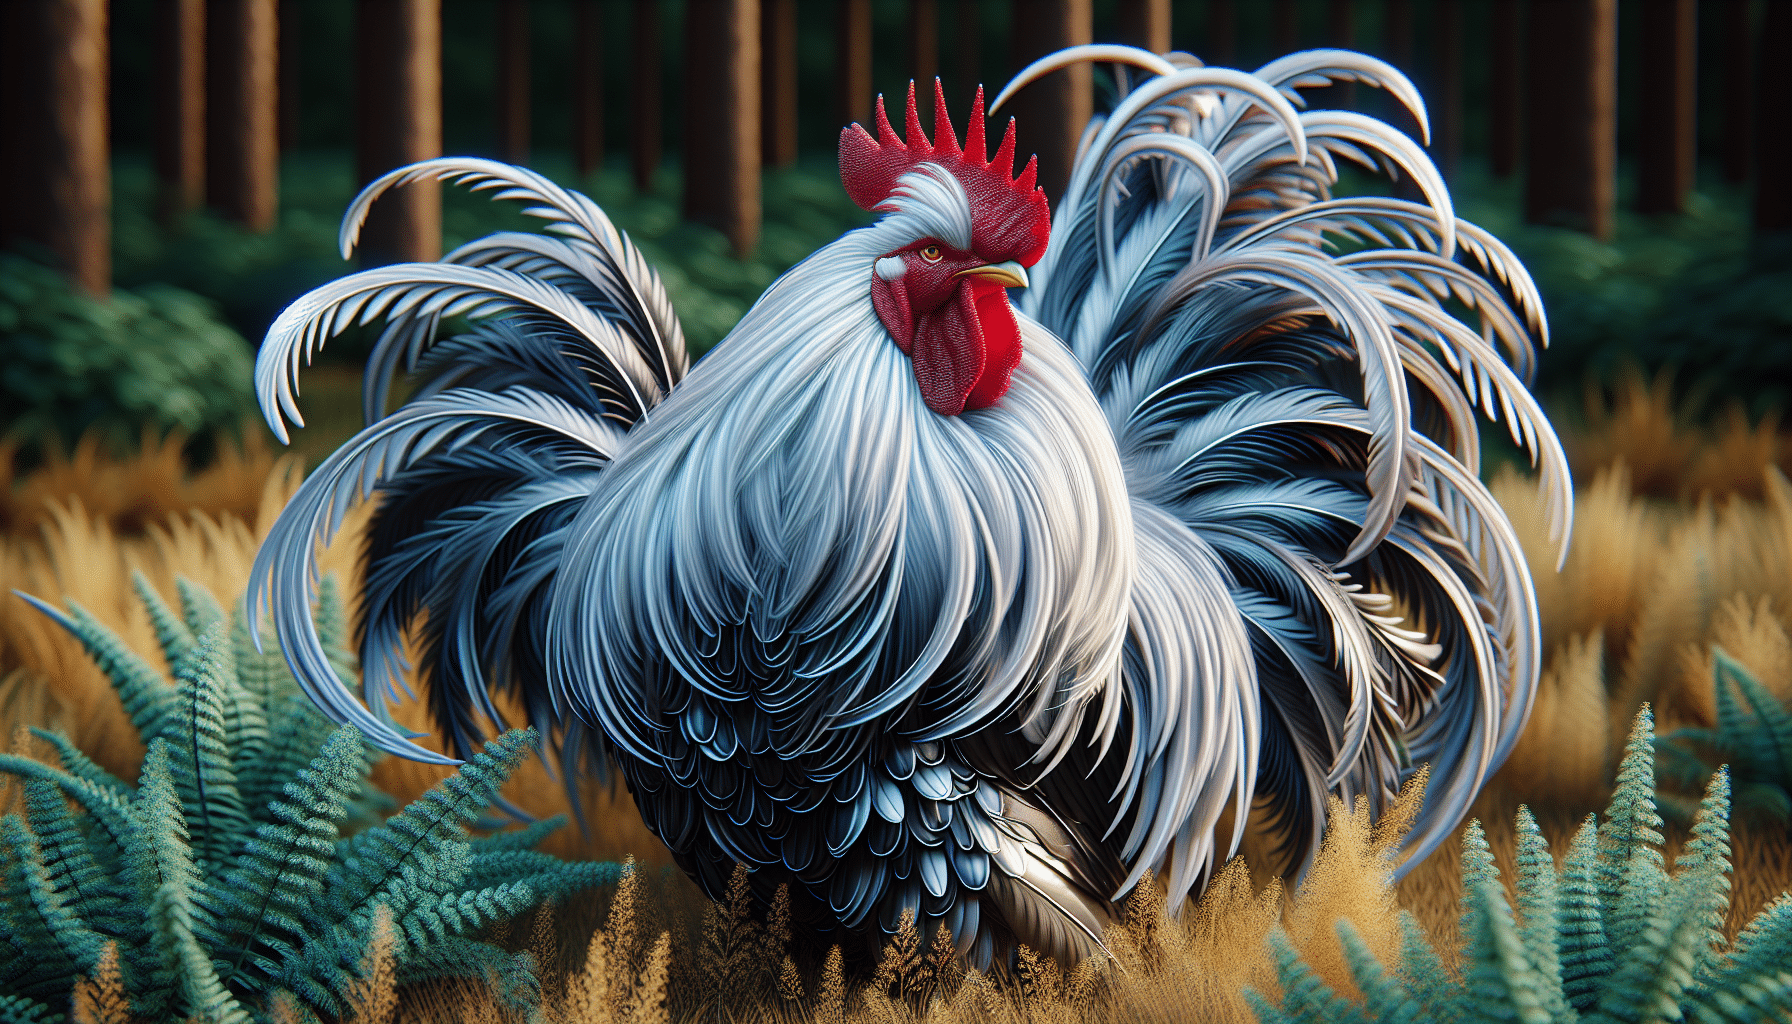 גלה מה מייחד את תרנגול הוויאנדוט הכסוף ולמד על המאפיינים והתכונות הייחודיים שלו.